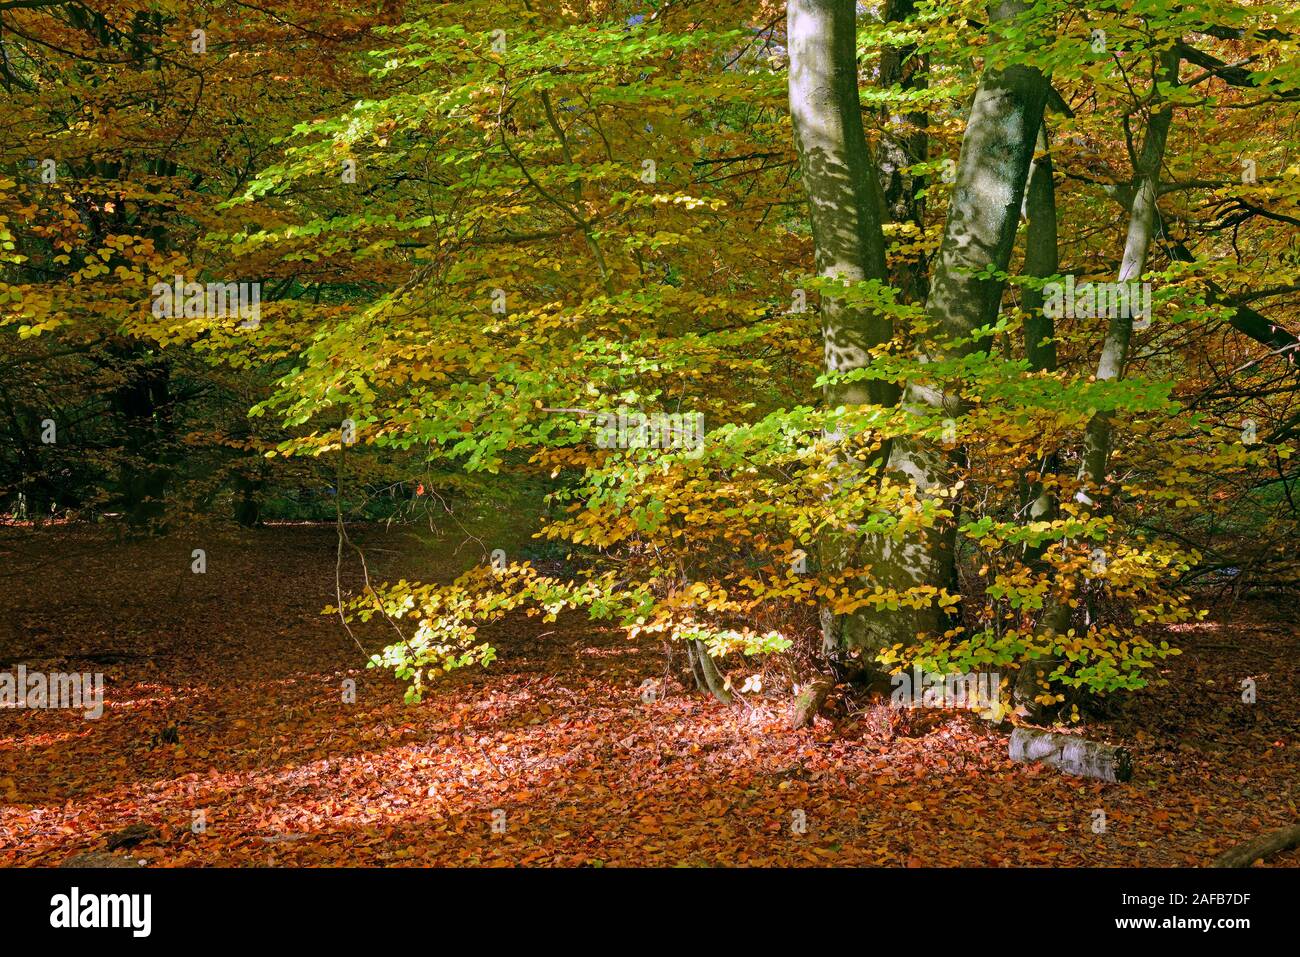 Stimmungsvolle, herbstliche Lichtsituation mit Buchen (Fagus) , Urwald Sababurg, Assia, Deutschland, Europa Foto Stock